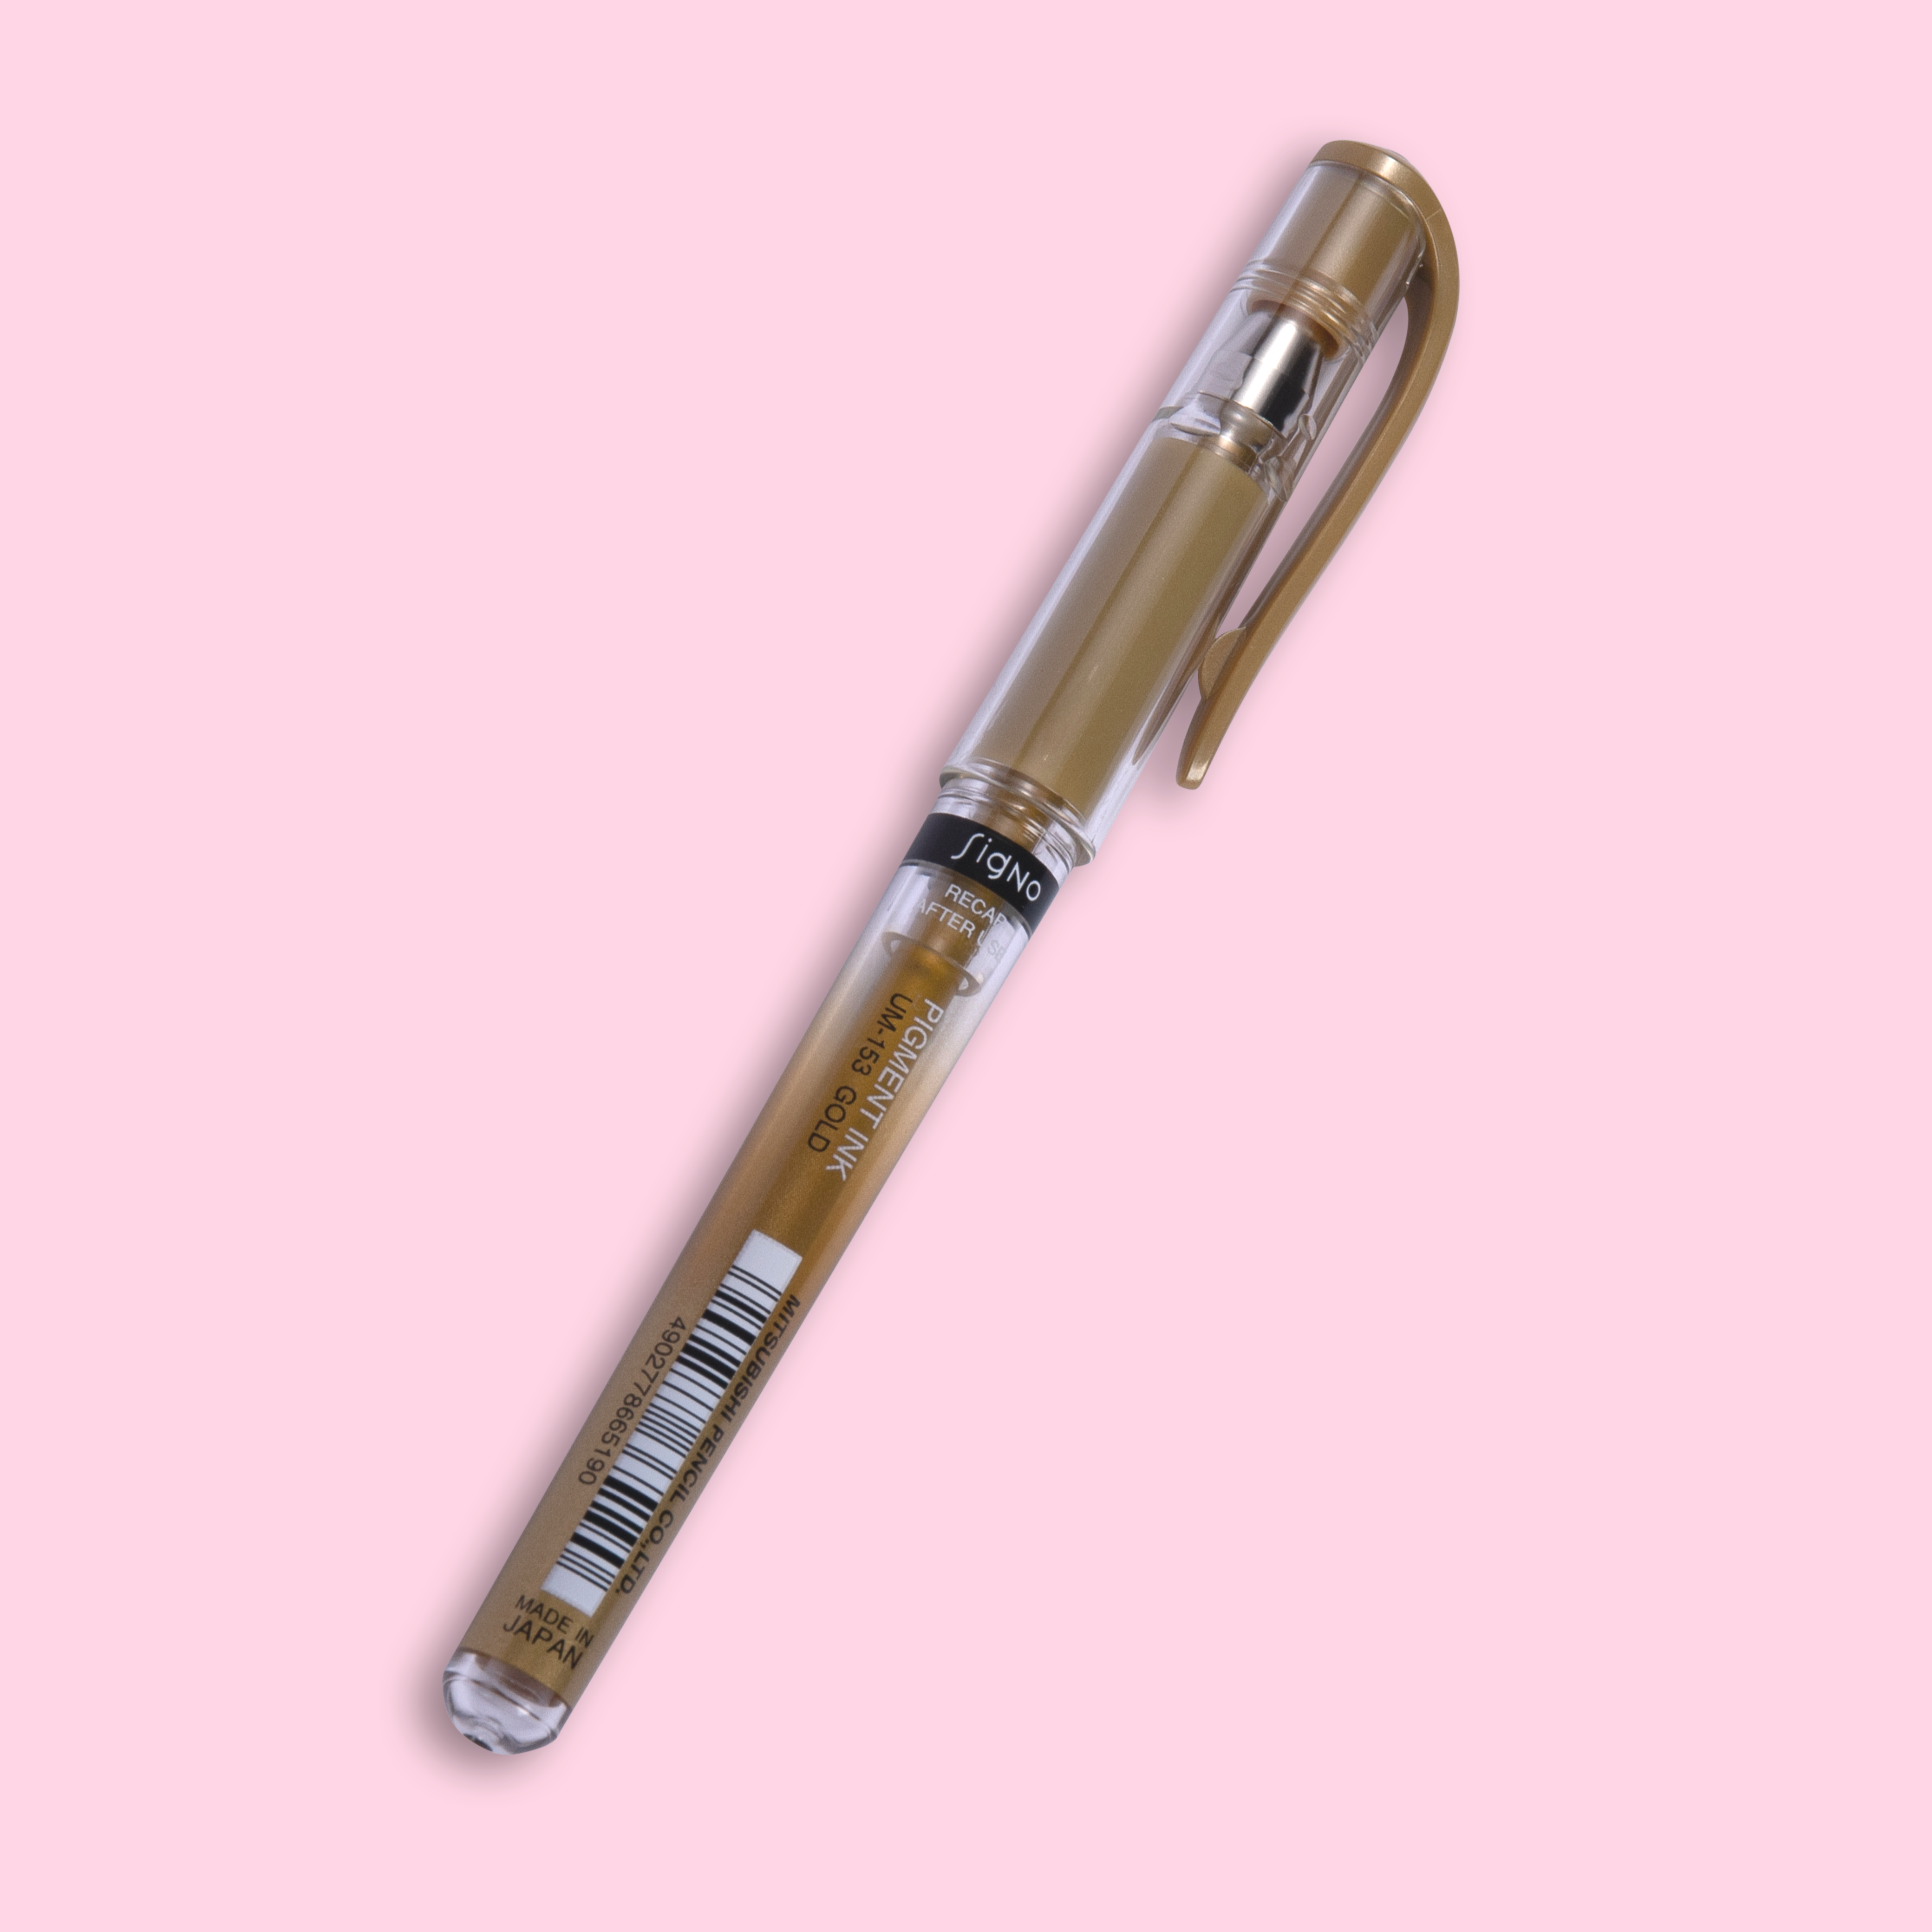 Uniball Gold Gel Pen